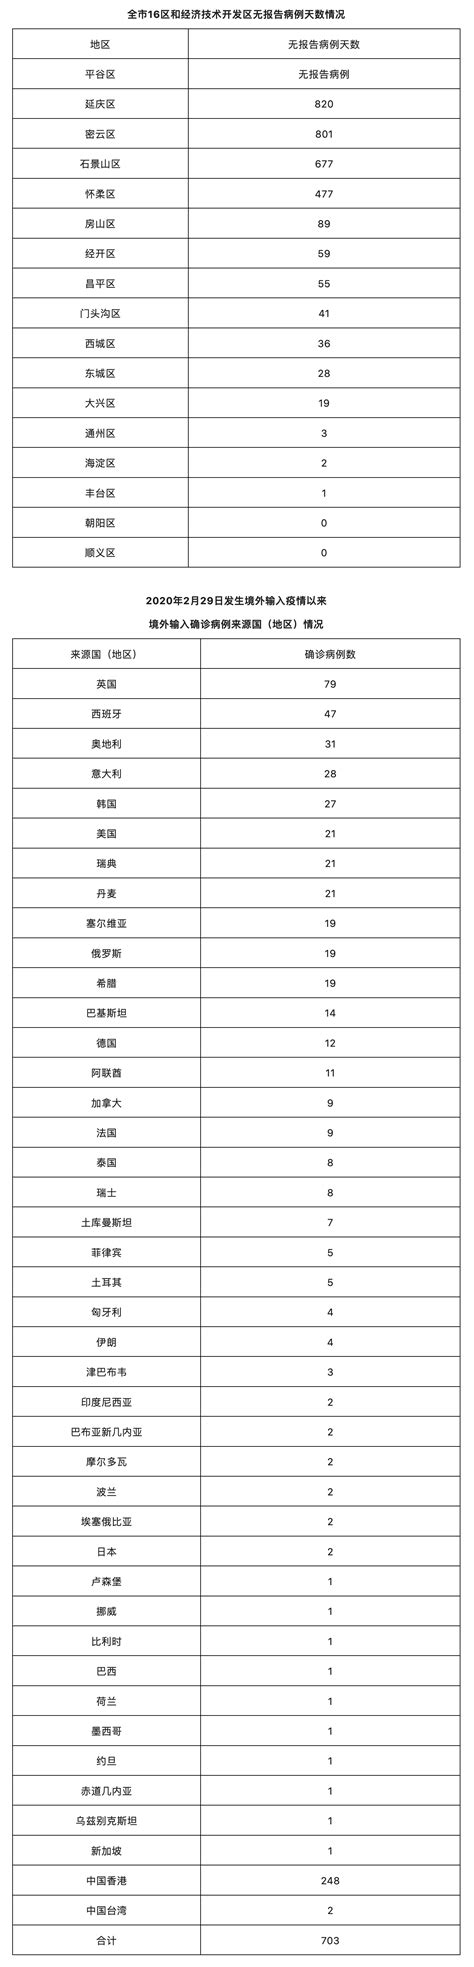 北京昨日新增6例本土确诊病例